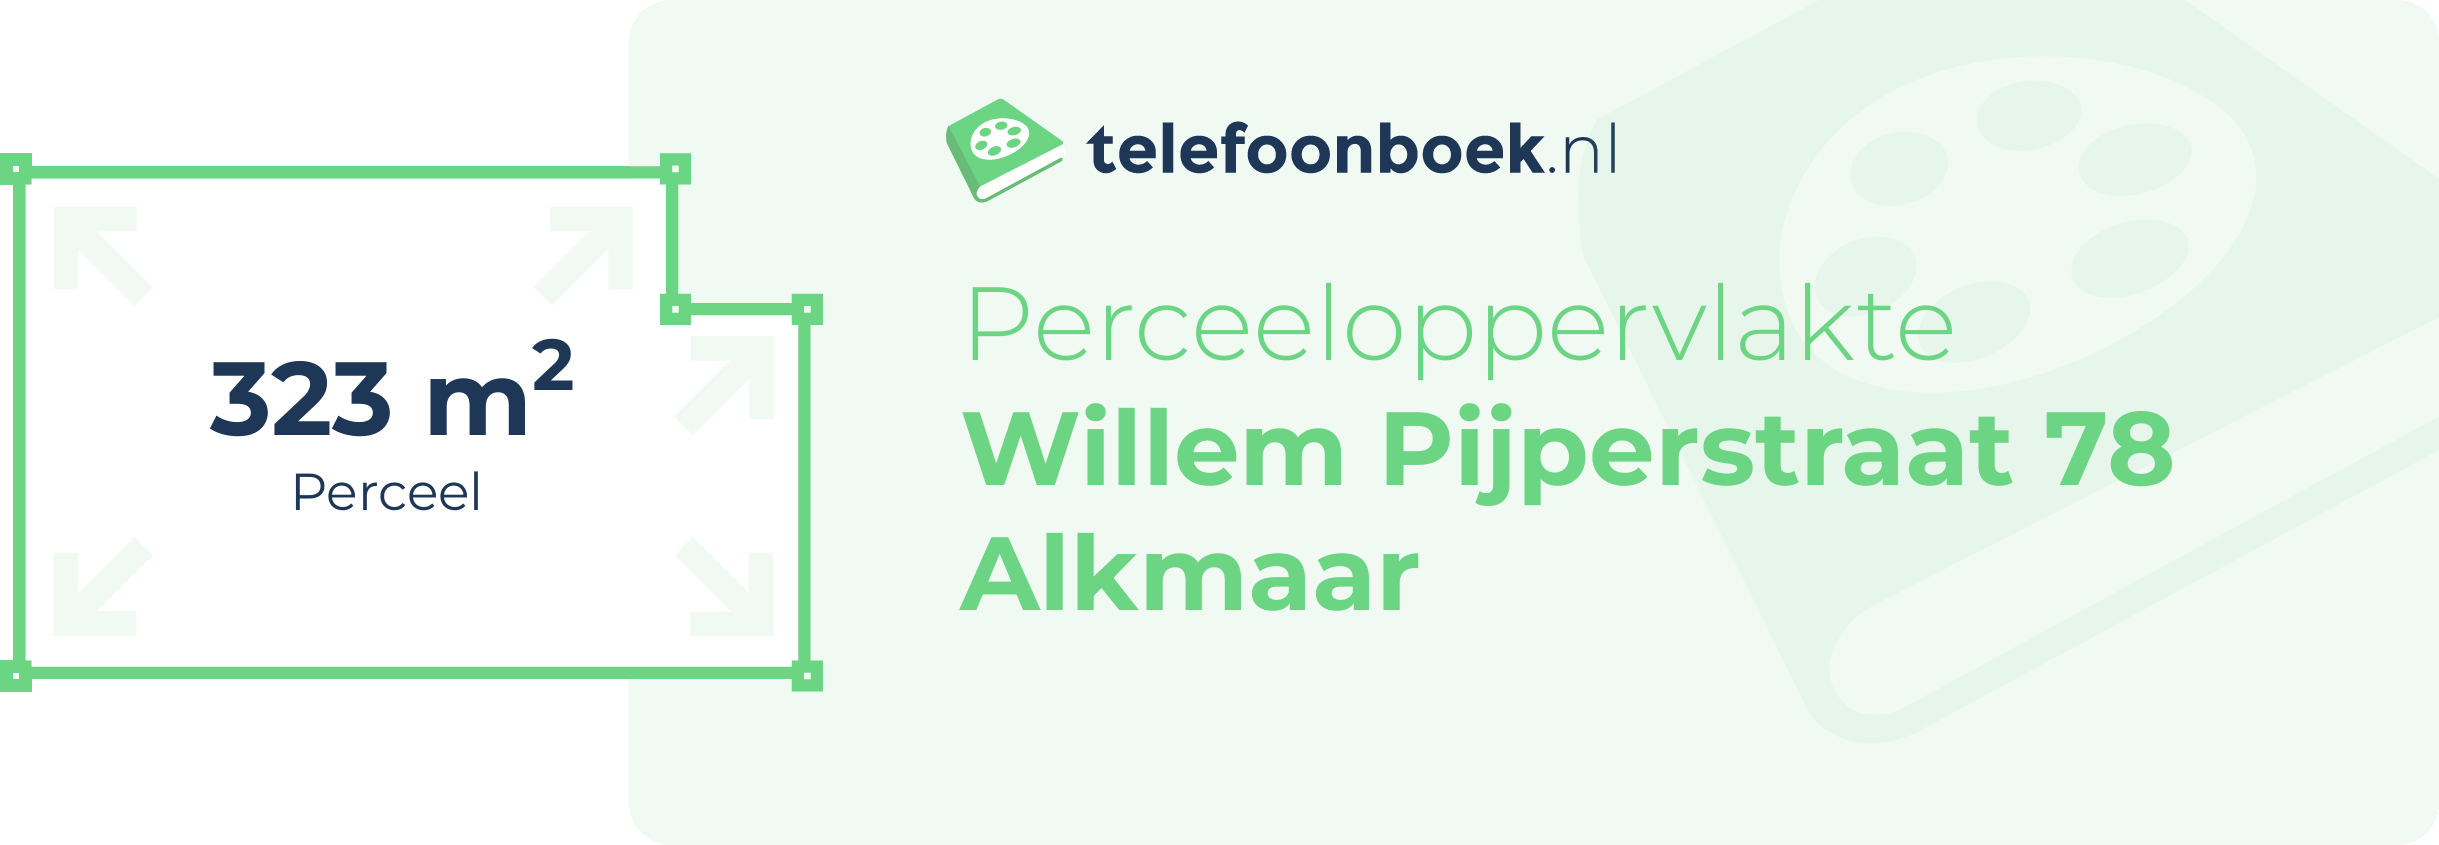 Perceeloppervlakte Willem Pijperstraat 78 Alkmaar